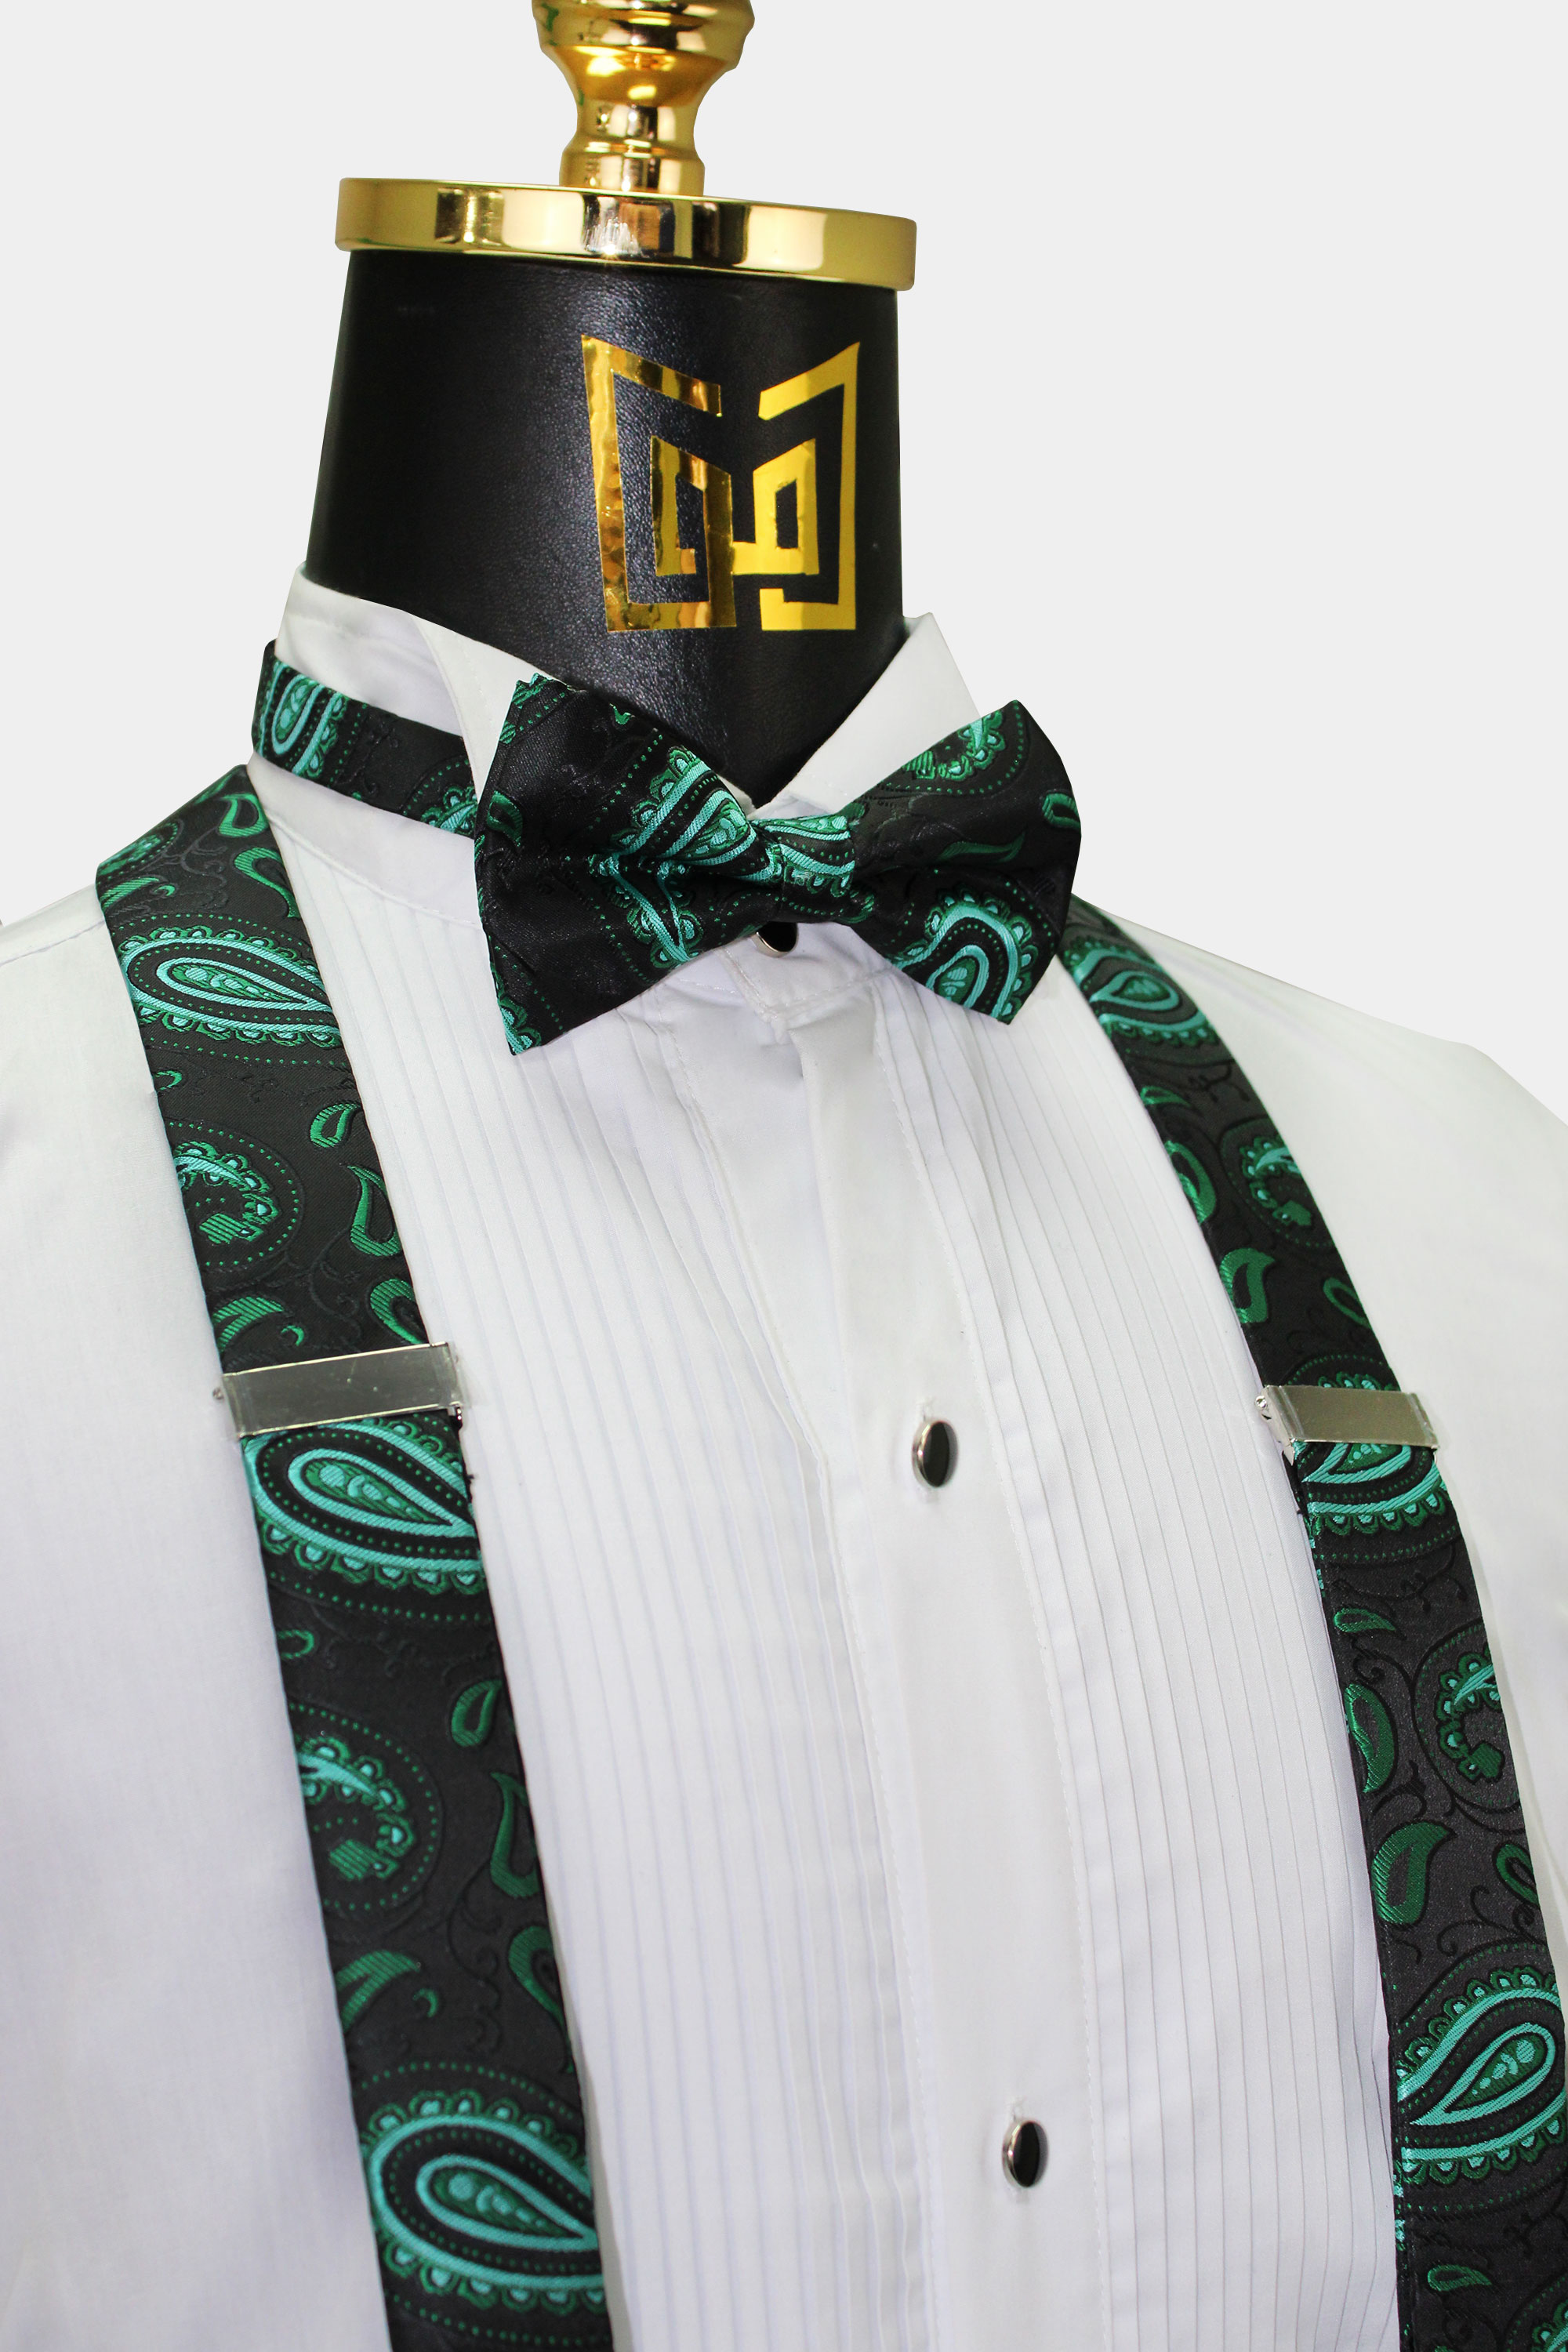 Black-and-Green-Bowtie-Suspenders-Groomsmen-Wedding-Set-from-Gentlemansguru.com.com